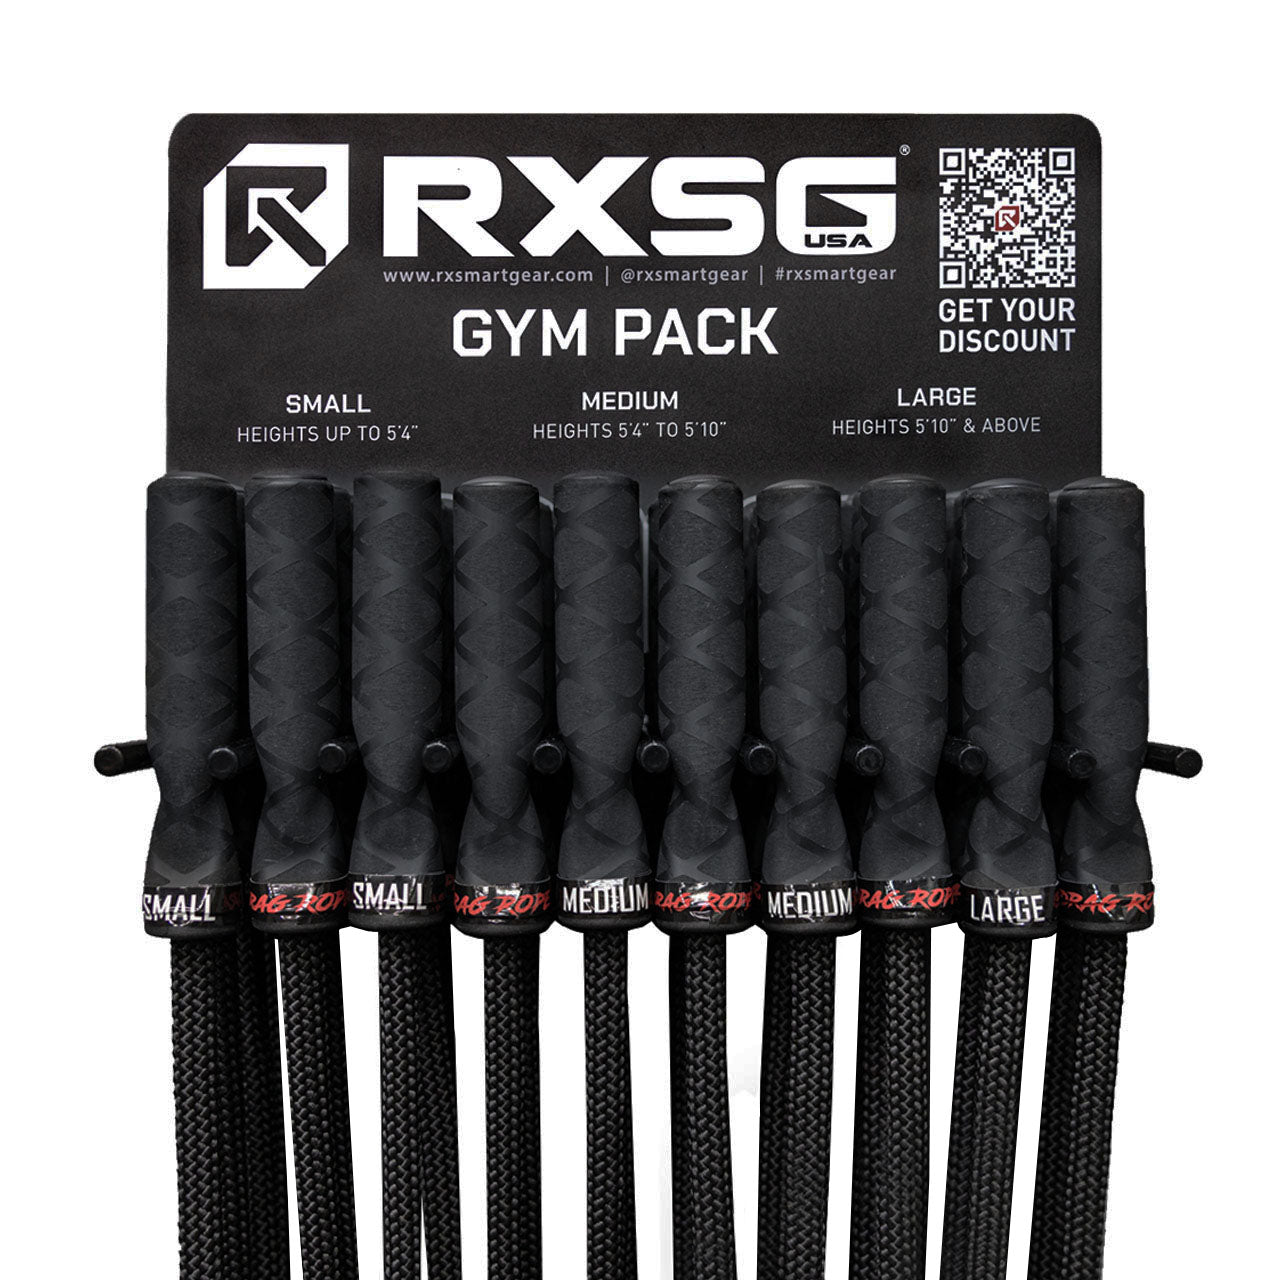 Gym Package- Drag Rope